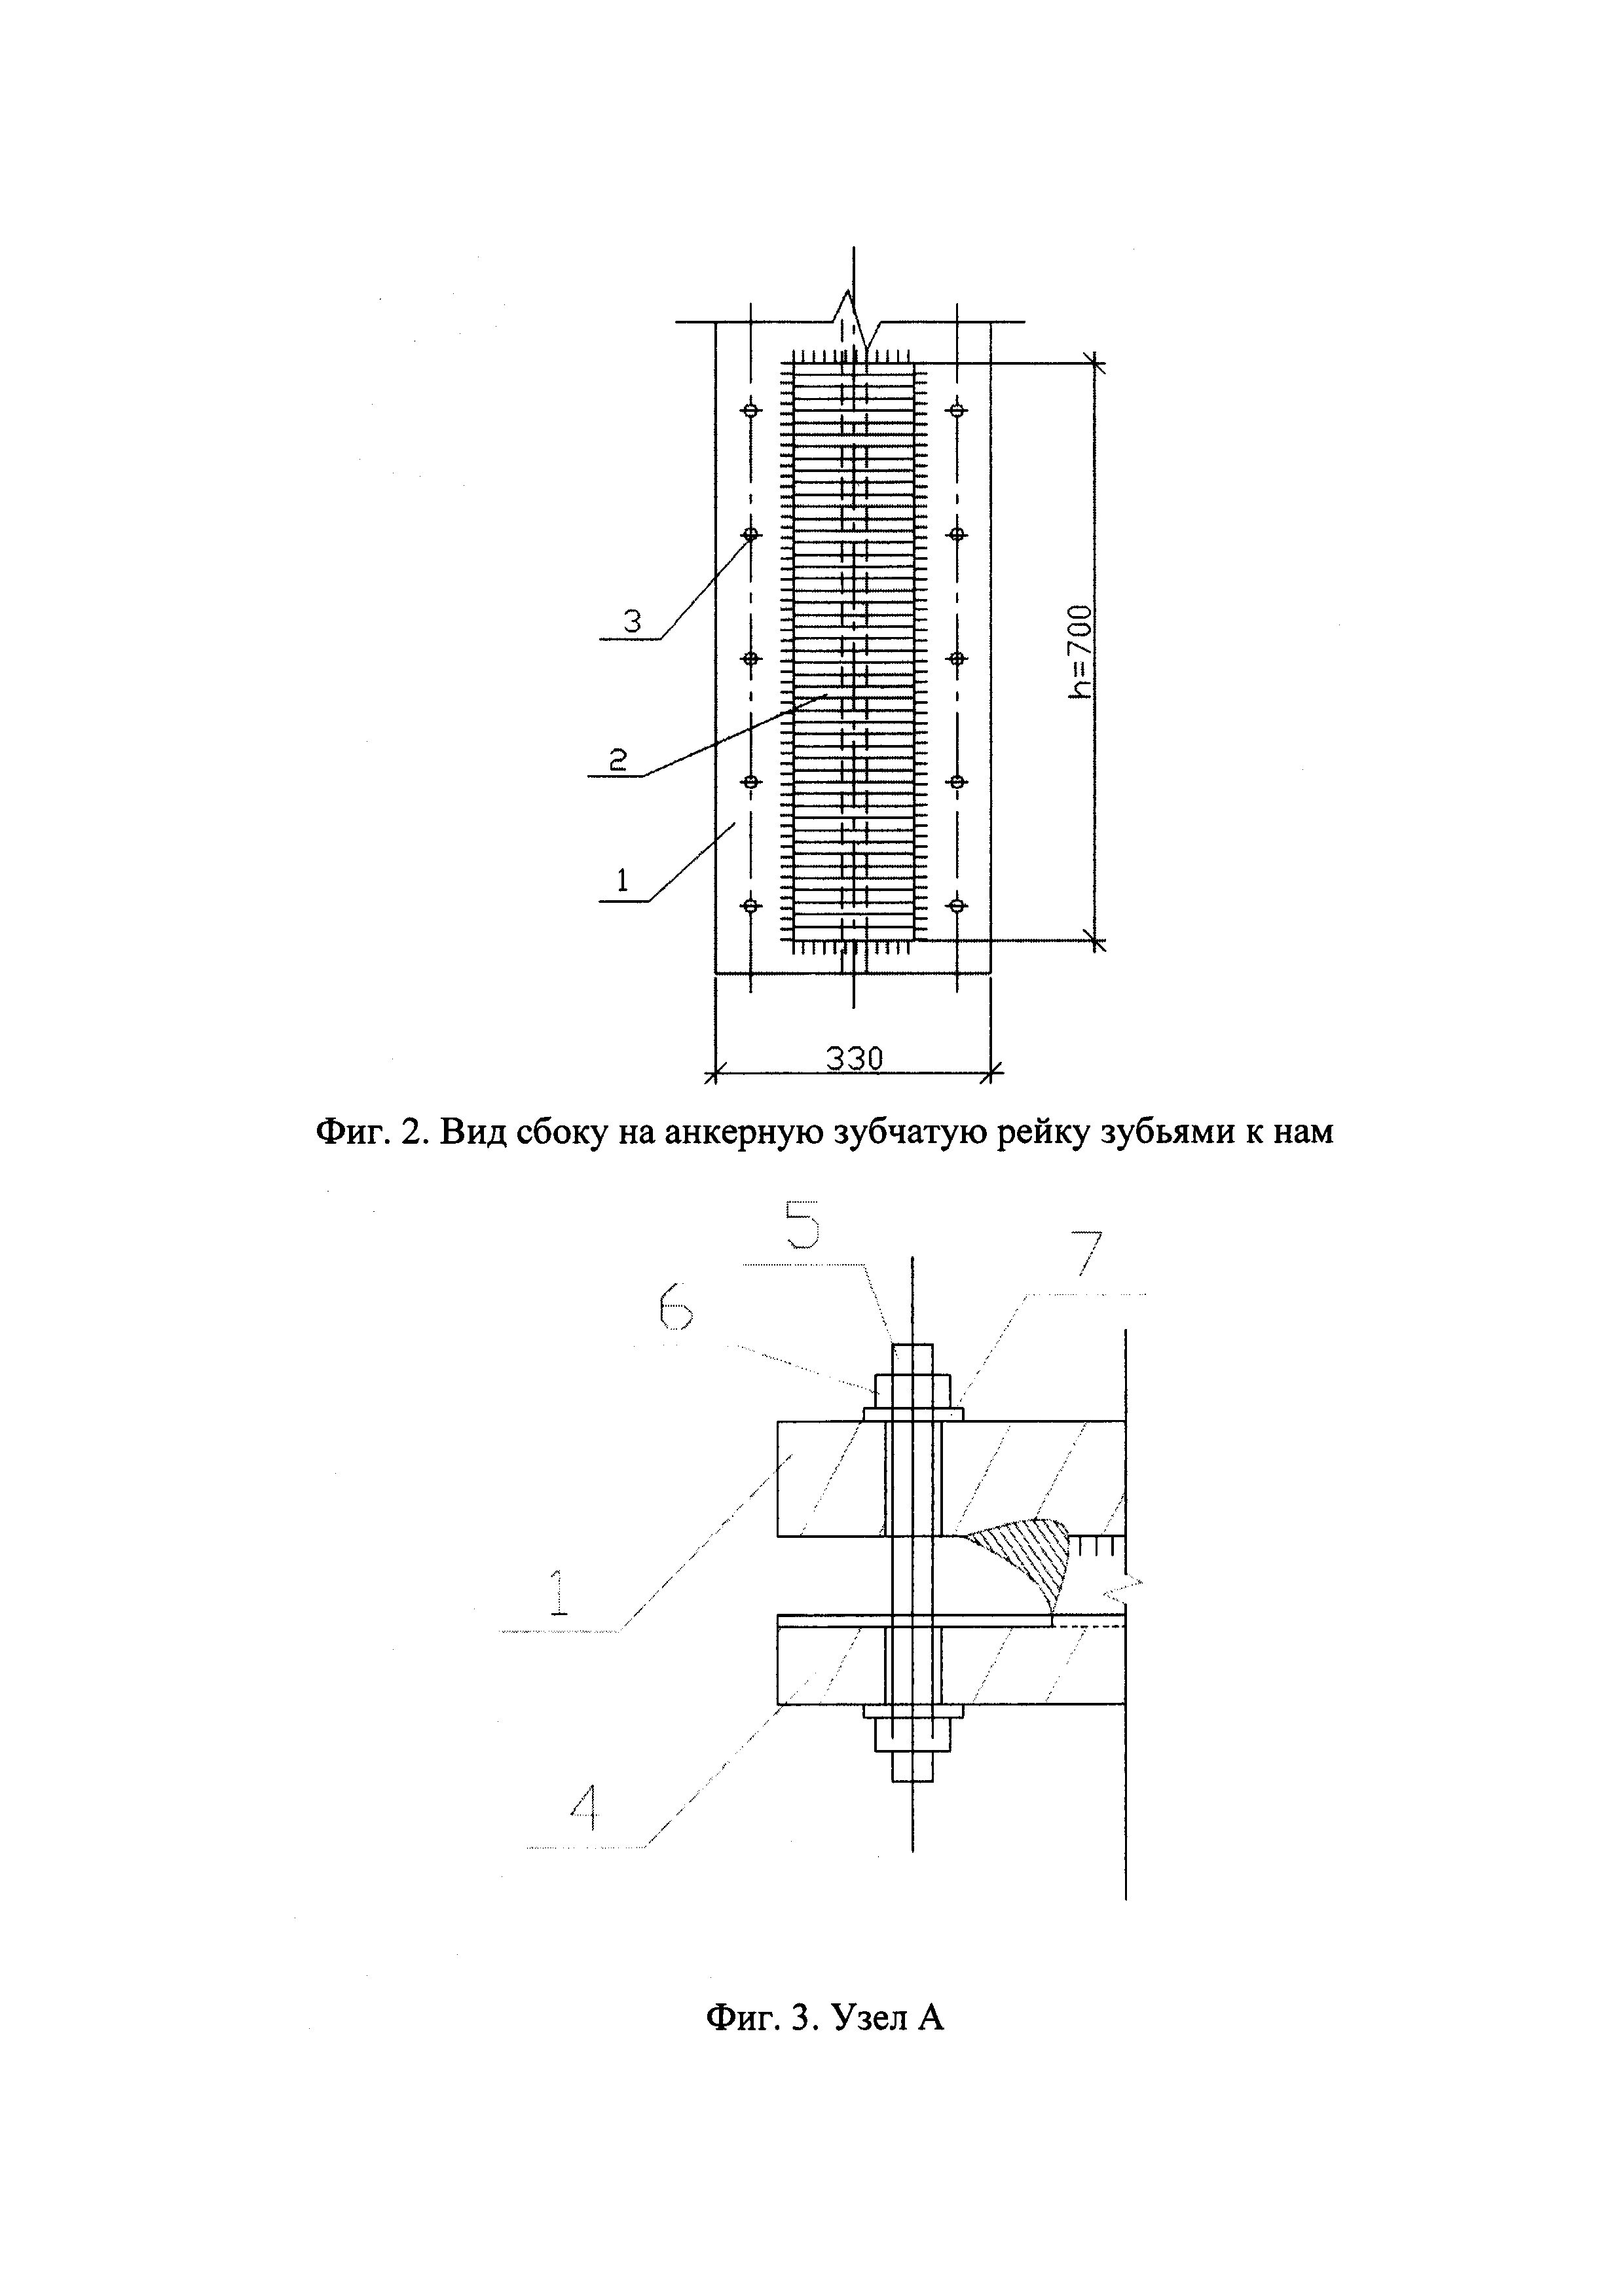 Жёсткое зубчатое соединение двухветвевых колонн с фундаментами